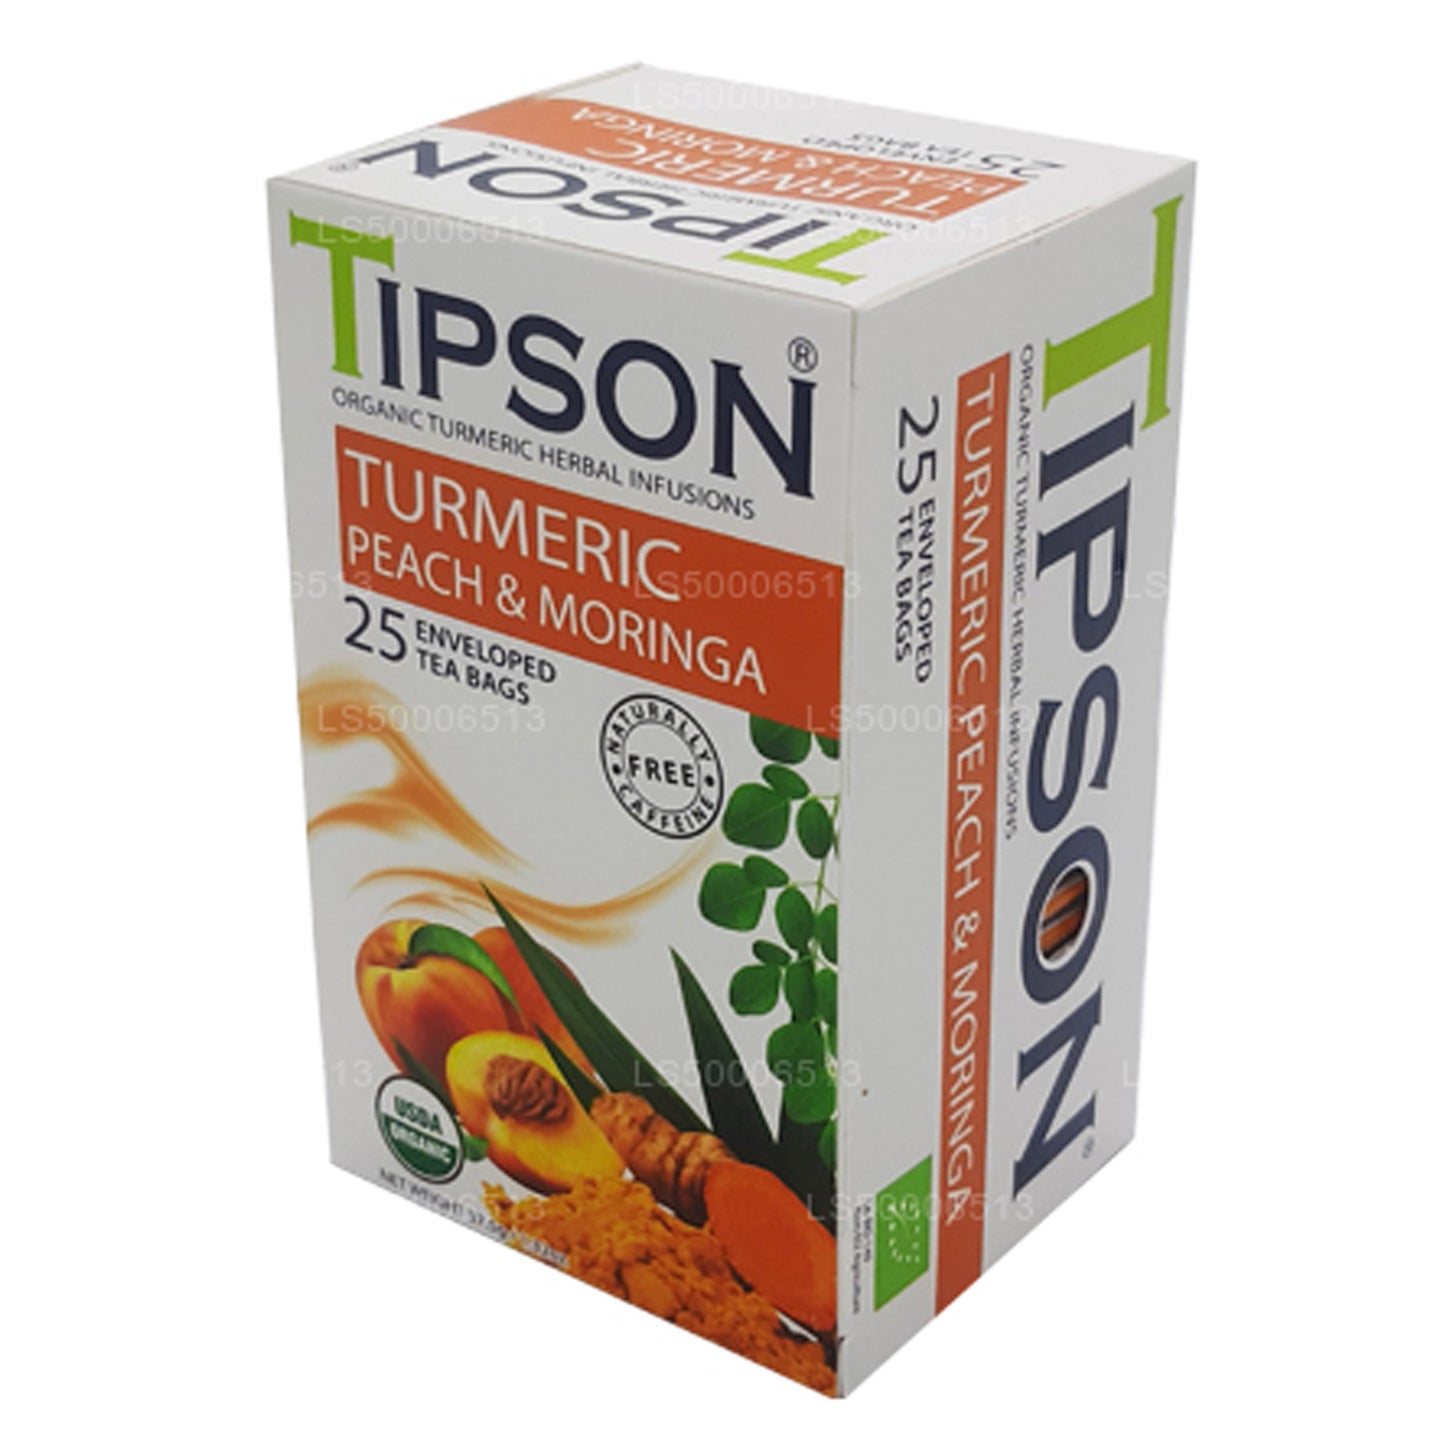 Tipson Tea Organisk Gurkemeje Fersken og Moringa (37,5 g)